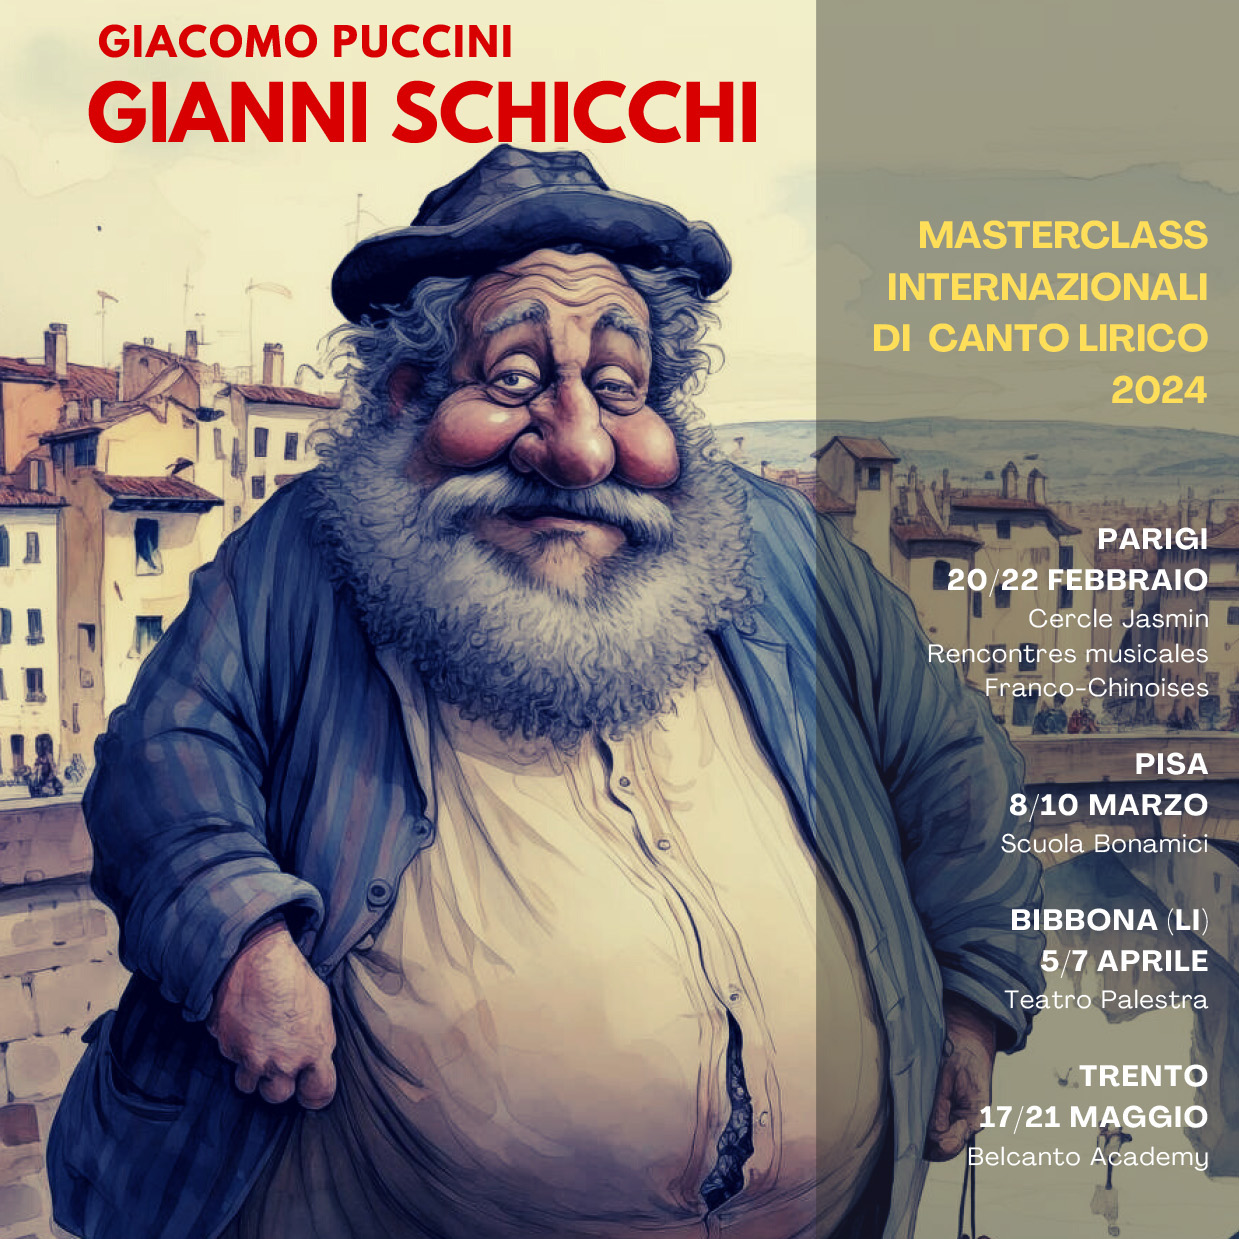 Masterclass di Canto Lirico sull’opera Gianni Schicchi